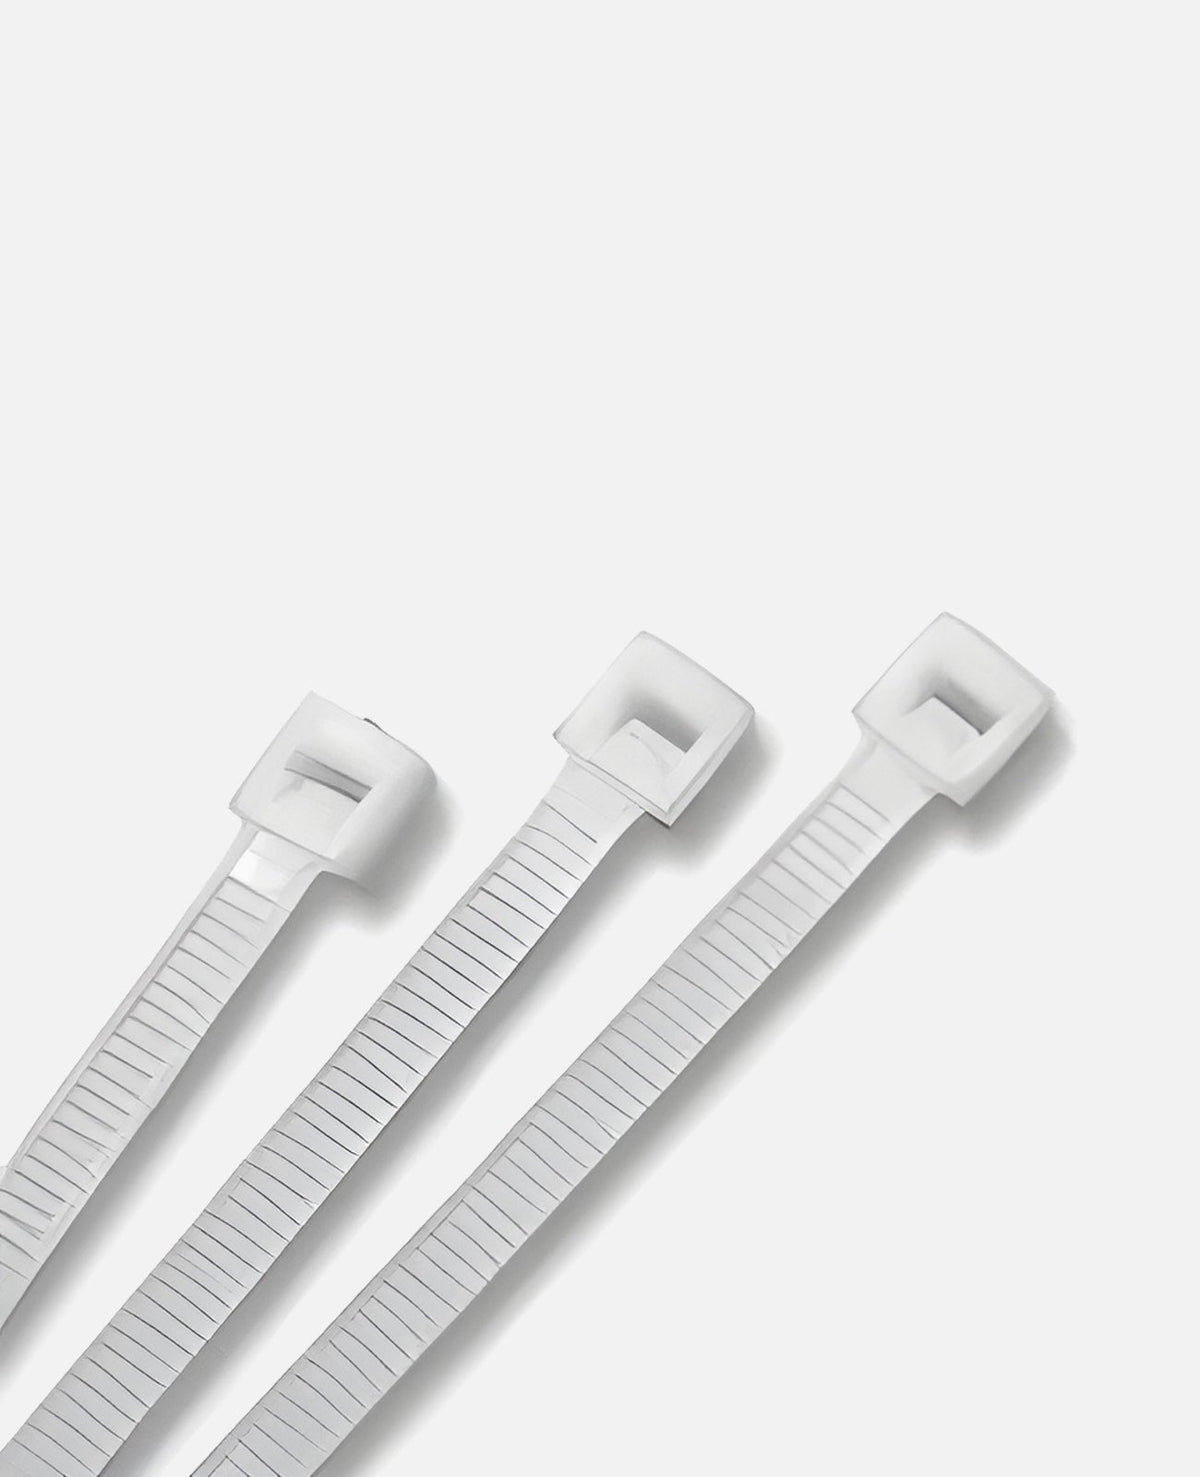 7" White Nylon Zip Ties, Indoor/Outdoor, 50lb, Heavy Duty, Directv Approved